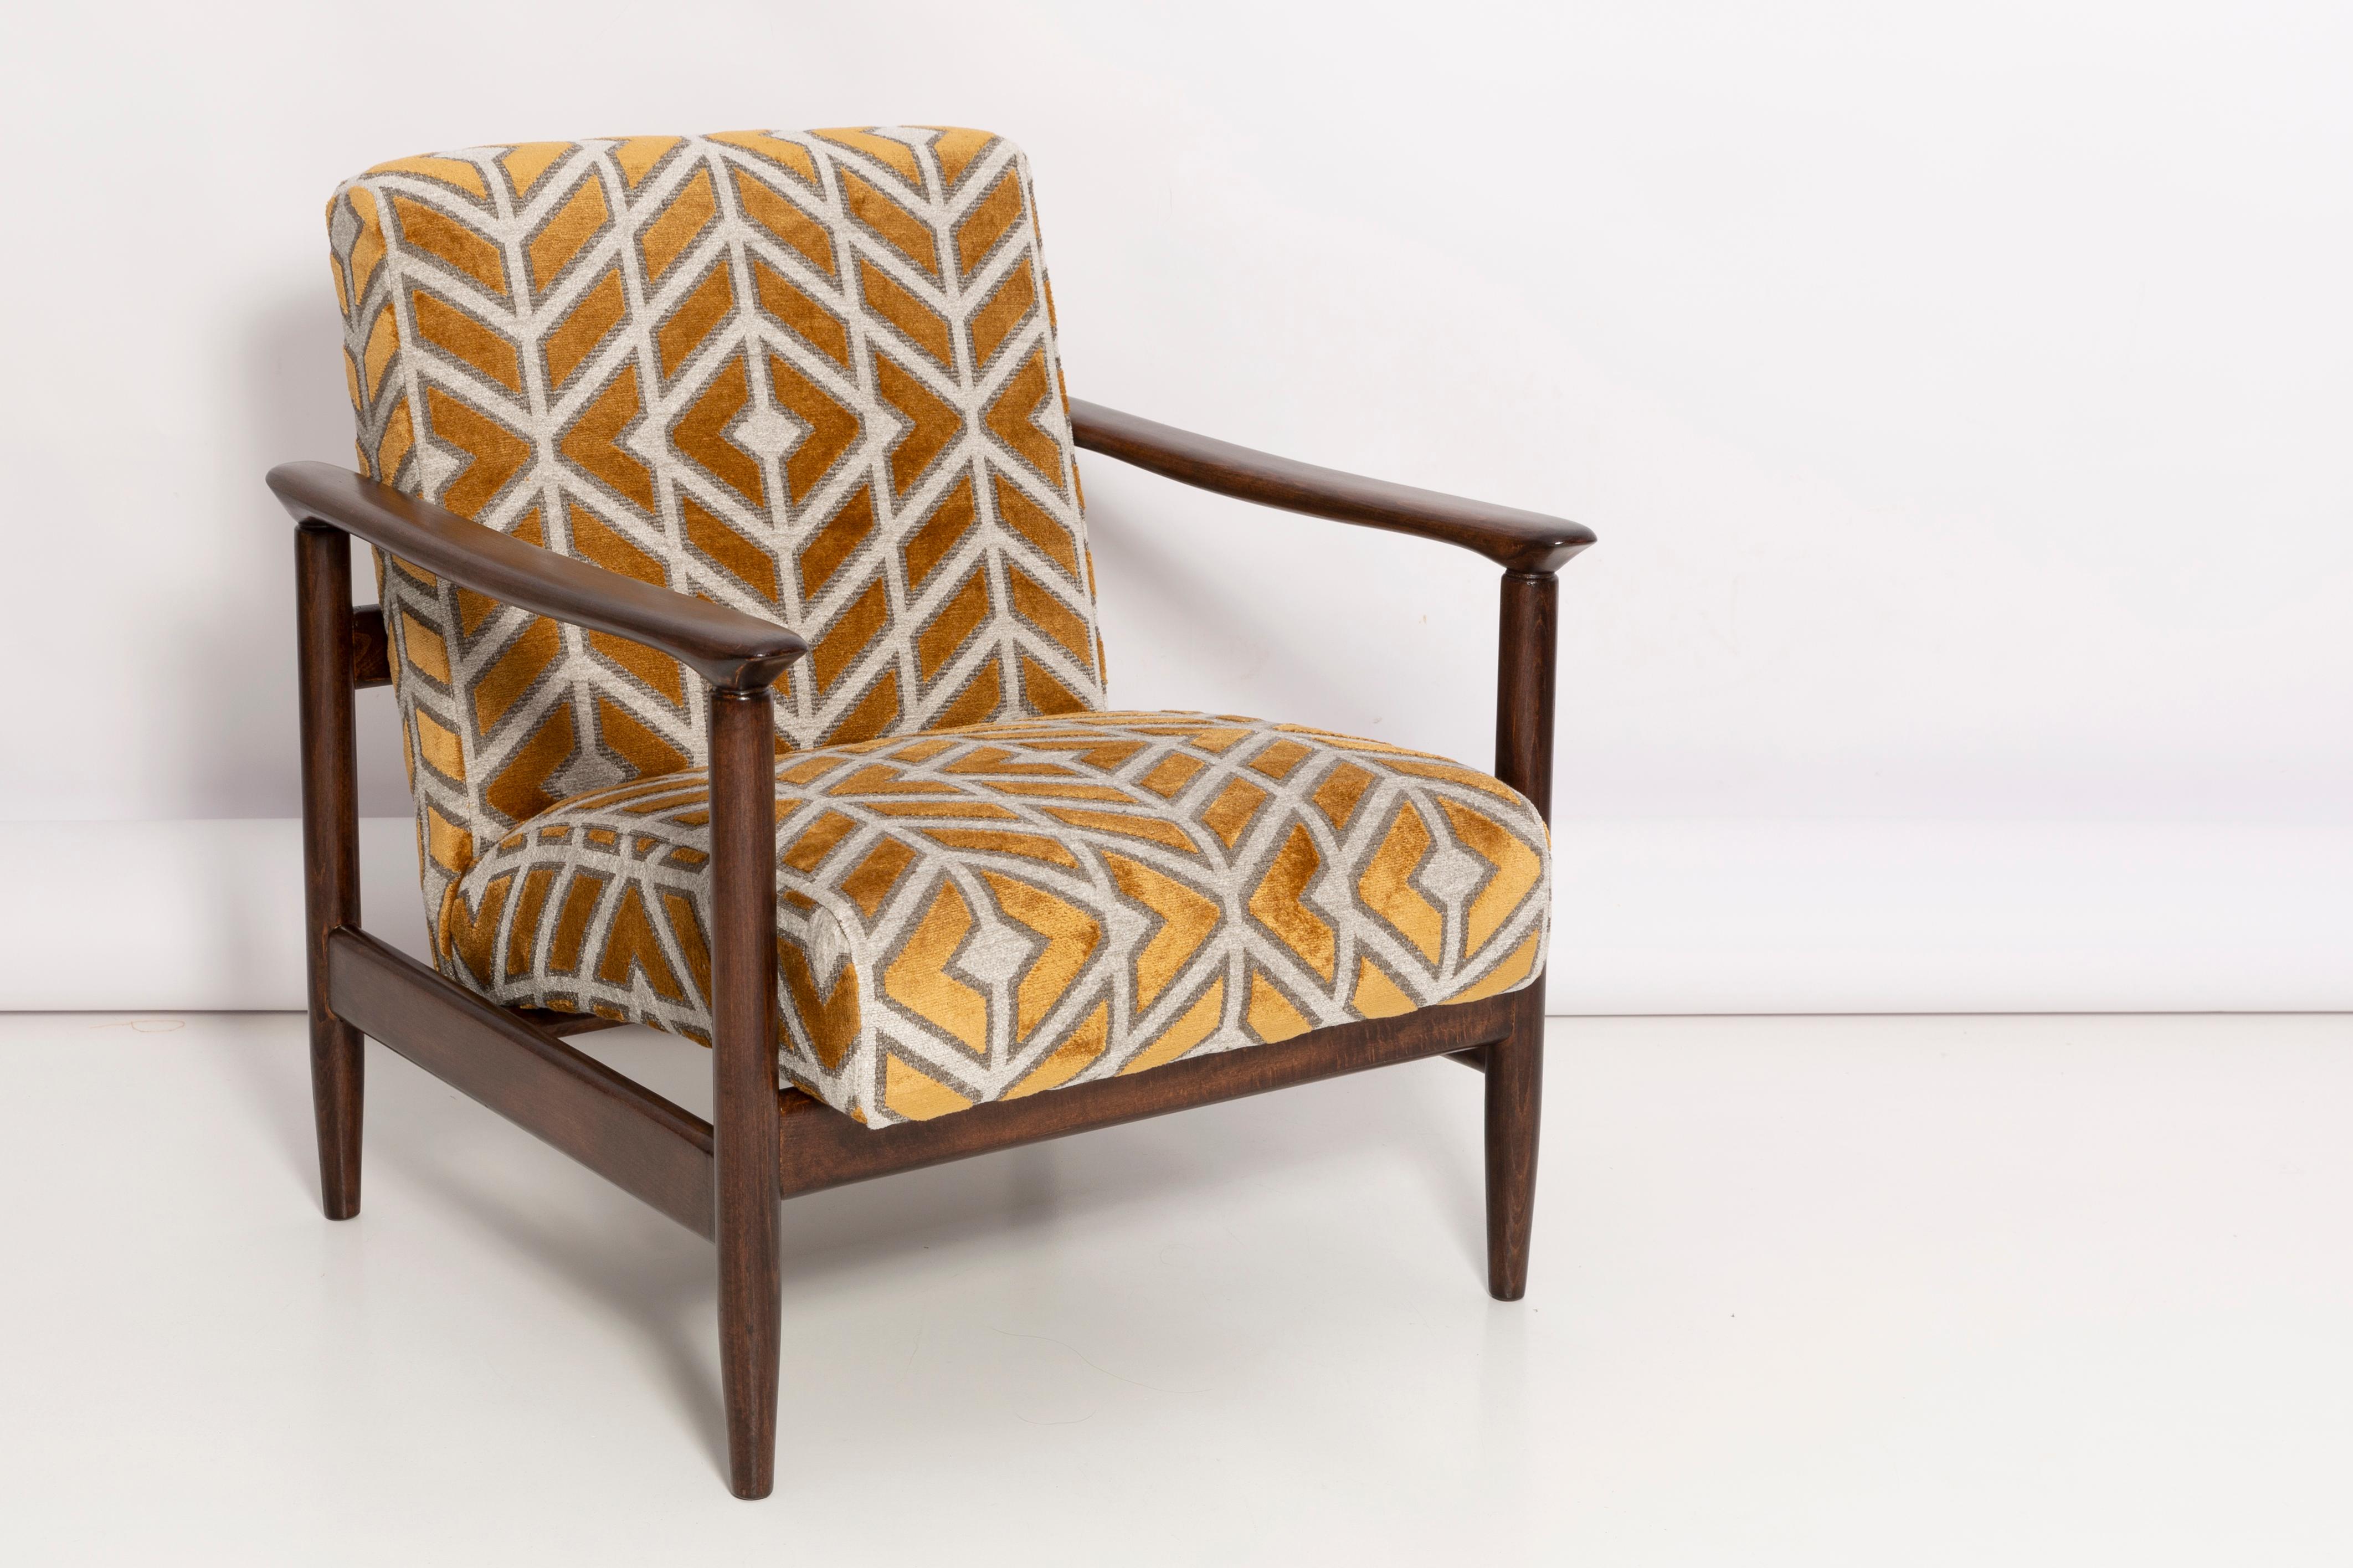 Ein schöner Sessel GFM-142 aus der Mitte des Jahrhunderts, entworfen von Edmund Homa. Der Sessel wurde in den 1960er Jahren in der Möbelfabrik Gosciecinska hergestellt. Hergestellt aus massivem Buchenholz. 

Der Sessel GFM-142 gilt als einer der